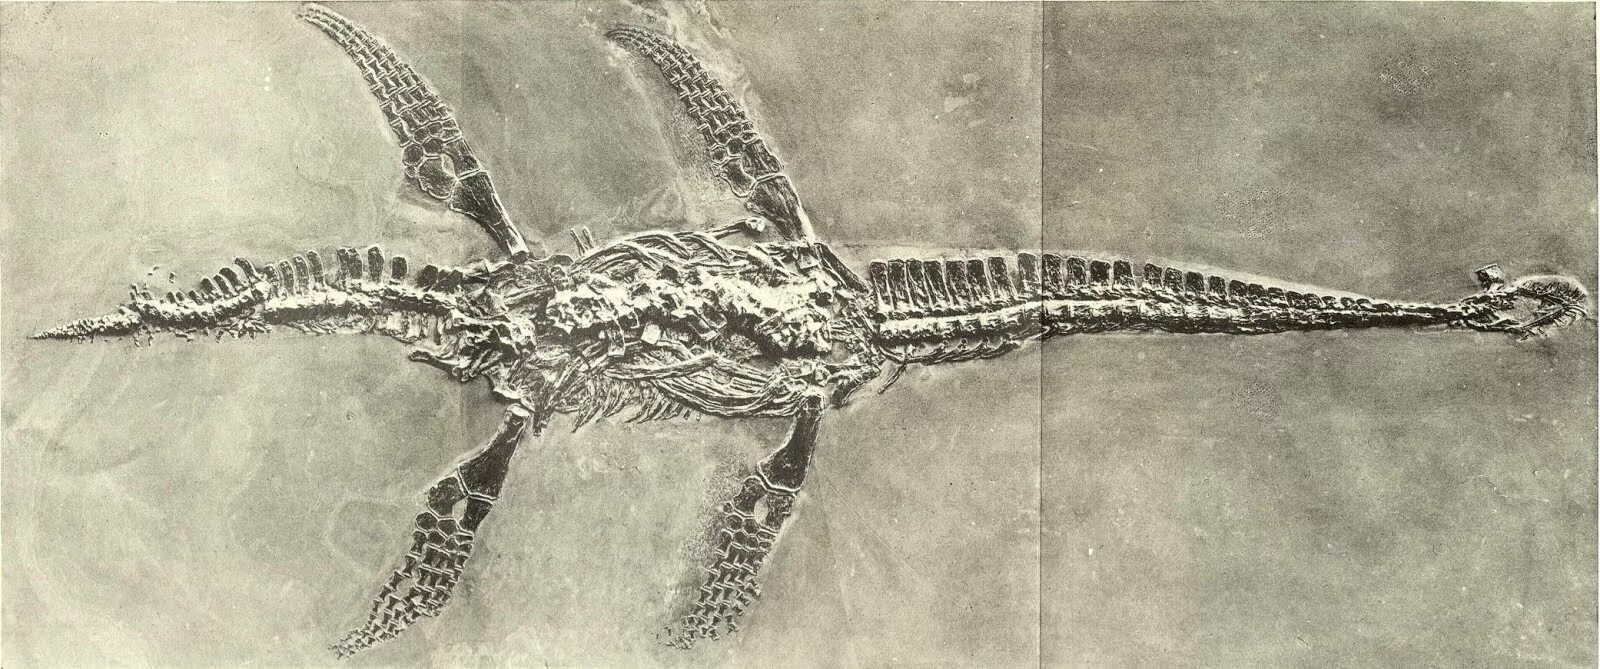 Кости плезиозавра. Плезиозавр окаменелость. Плезиозавр скелет. Скелет плезиозавра Палеонтологический музей.